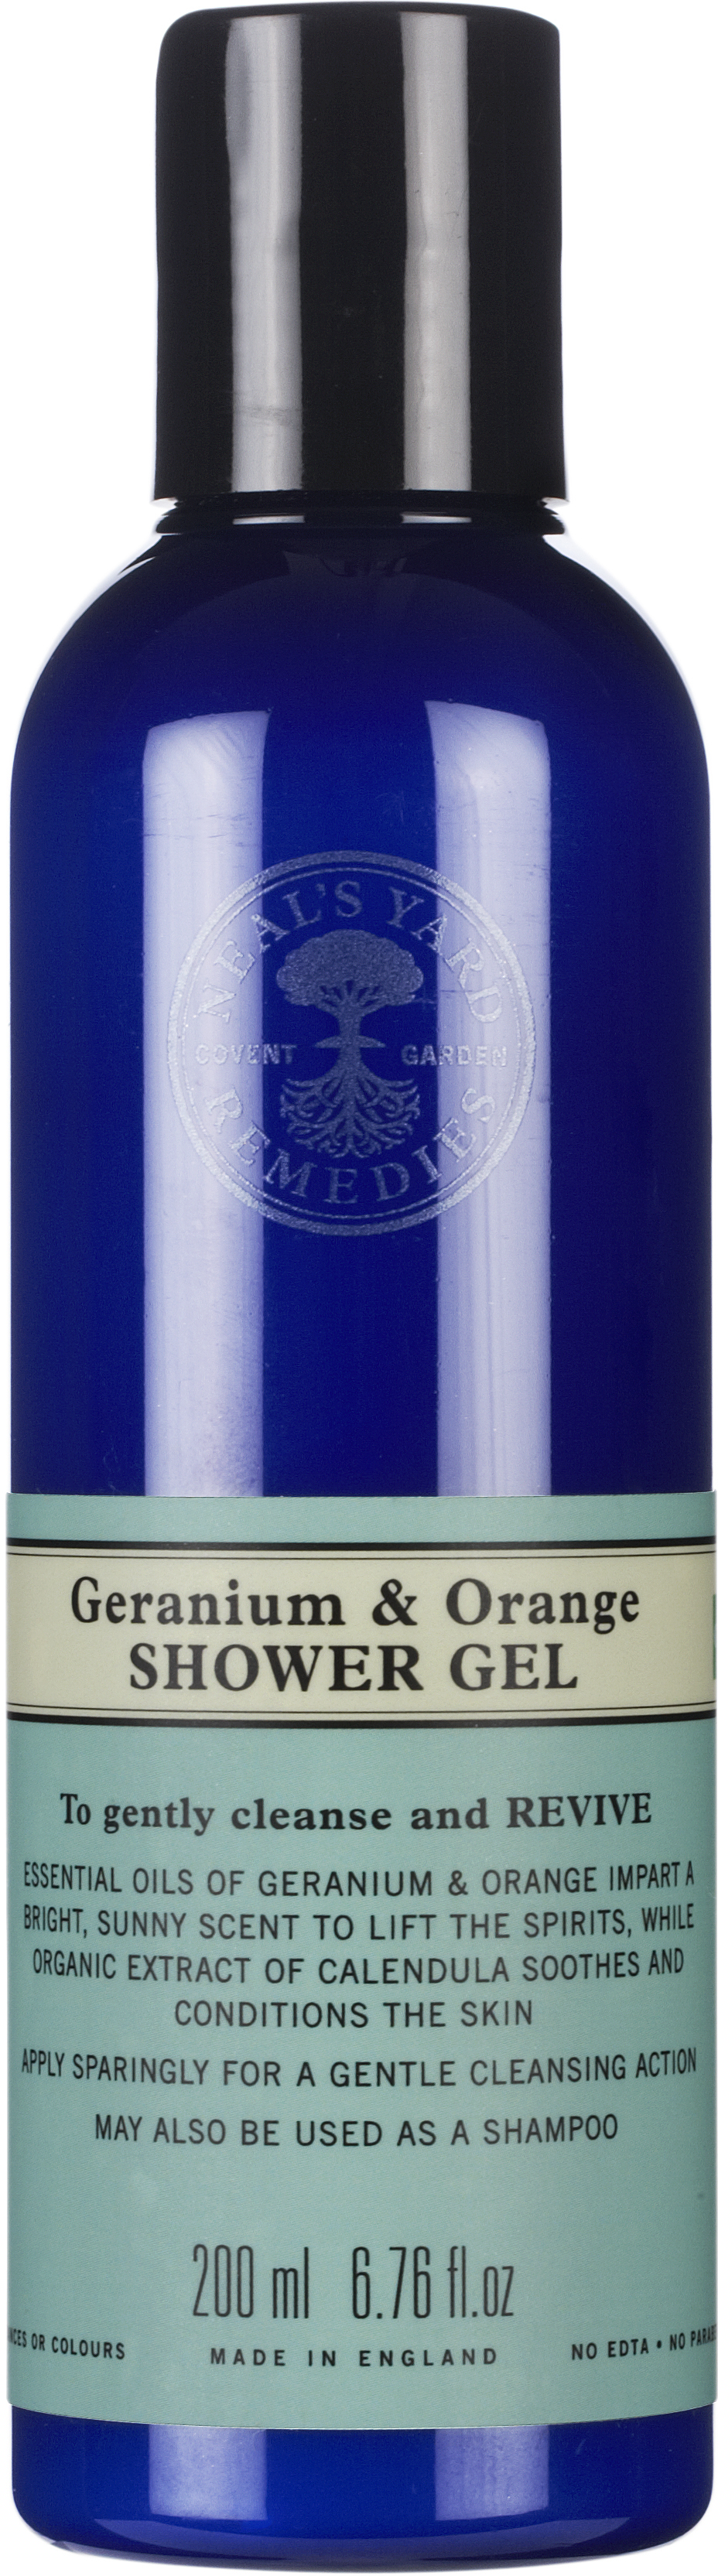 Neal’s Yard Remedies Geranium & Orange Shower Gel 200ml